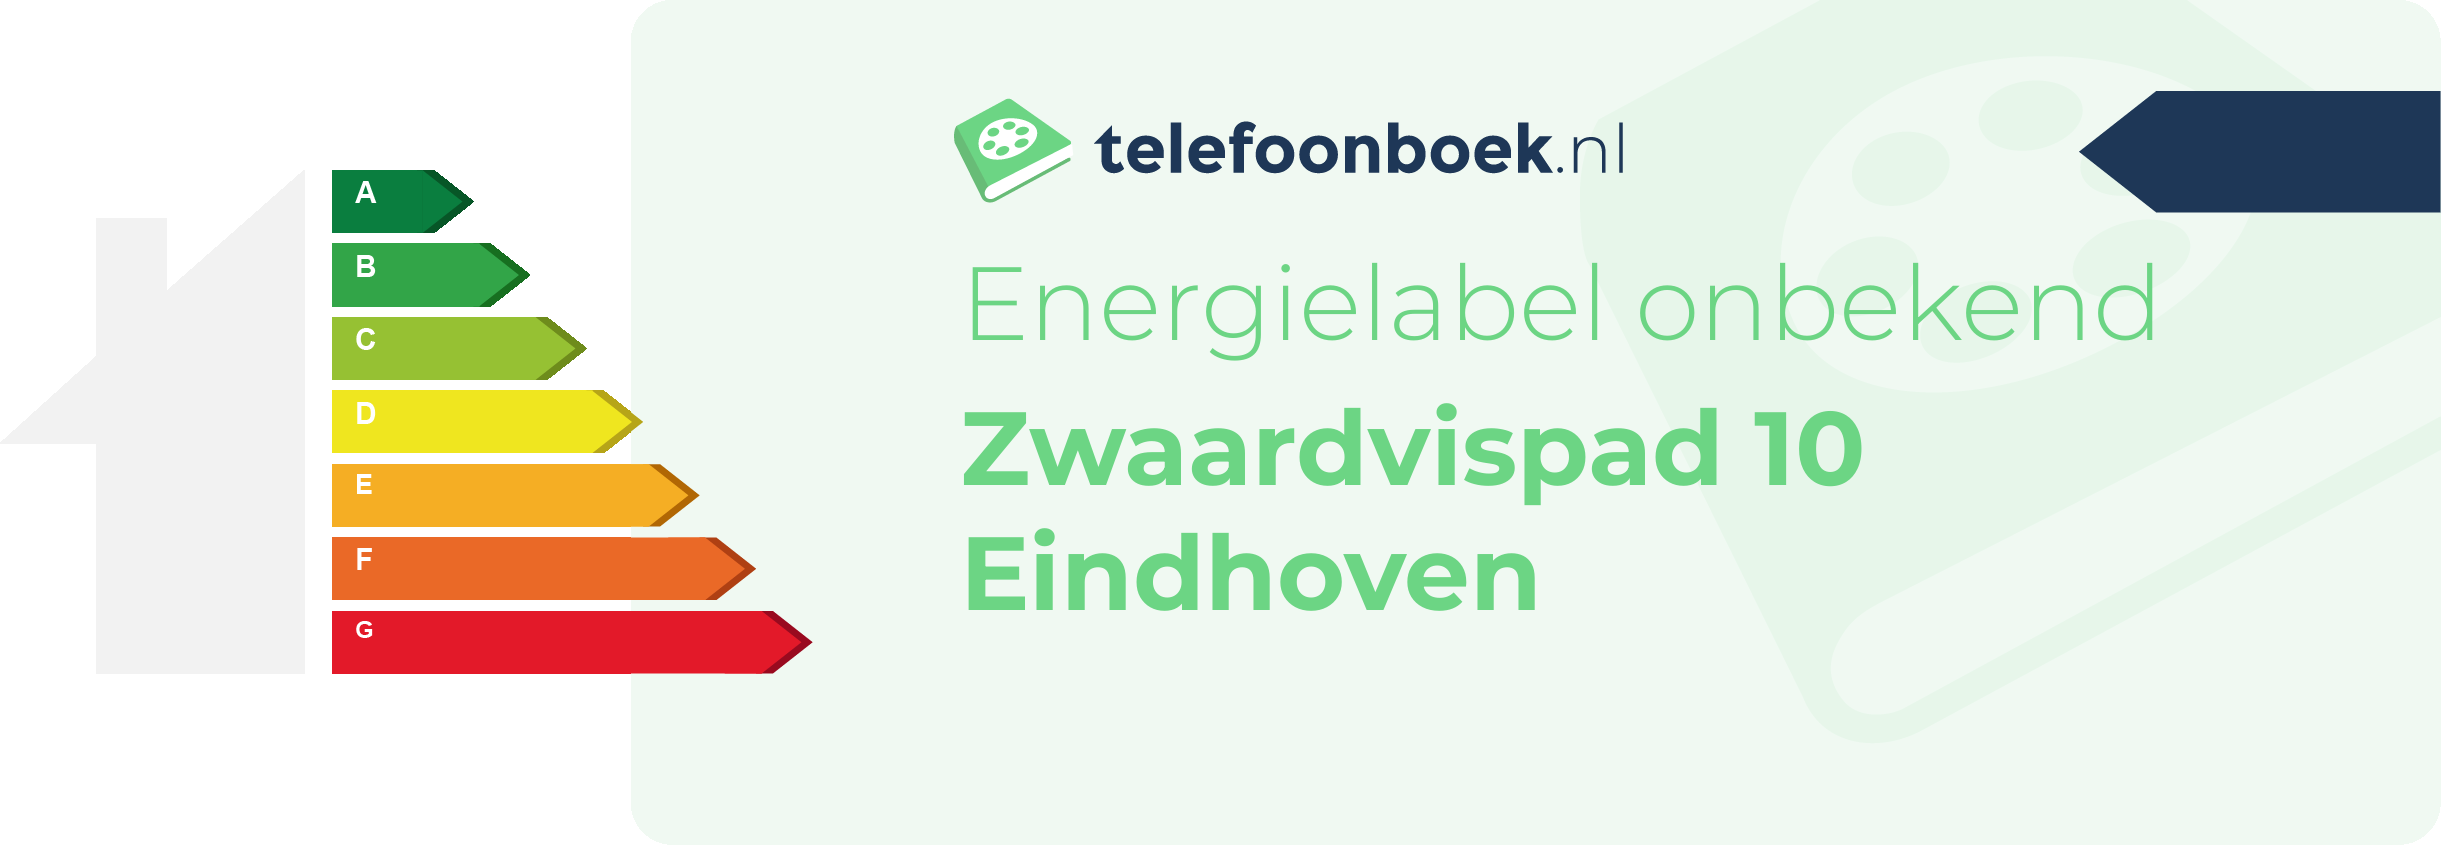 Energielabel Zwaardvispad 10 Eindhoven